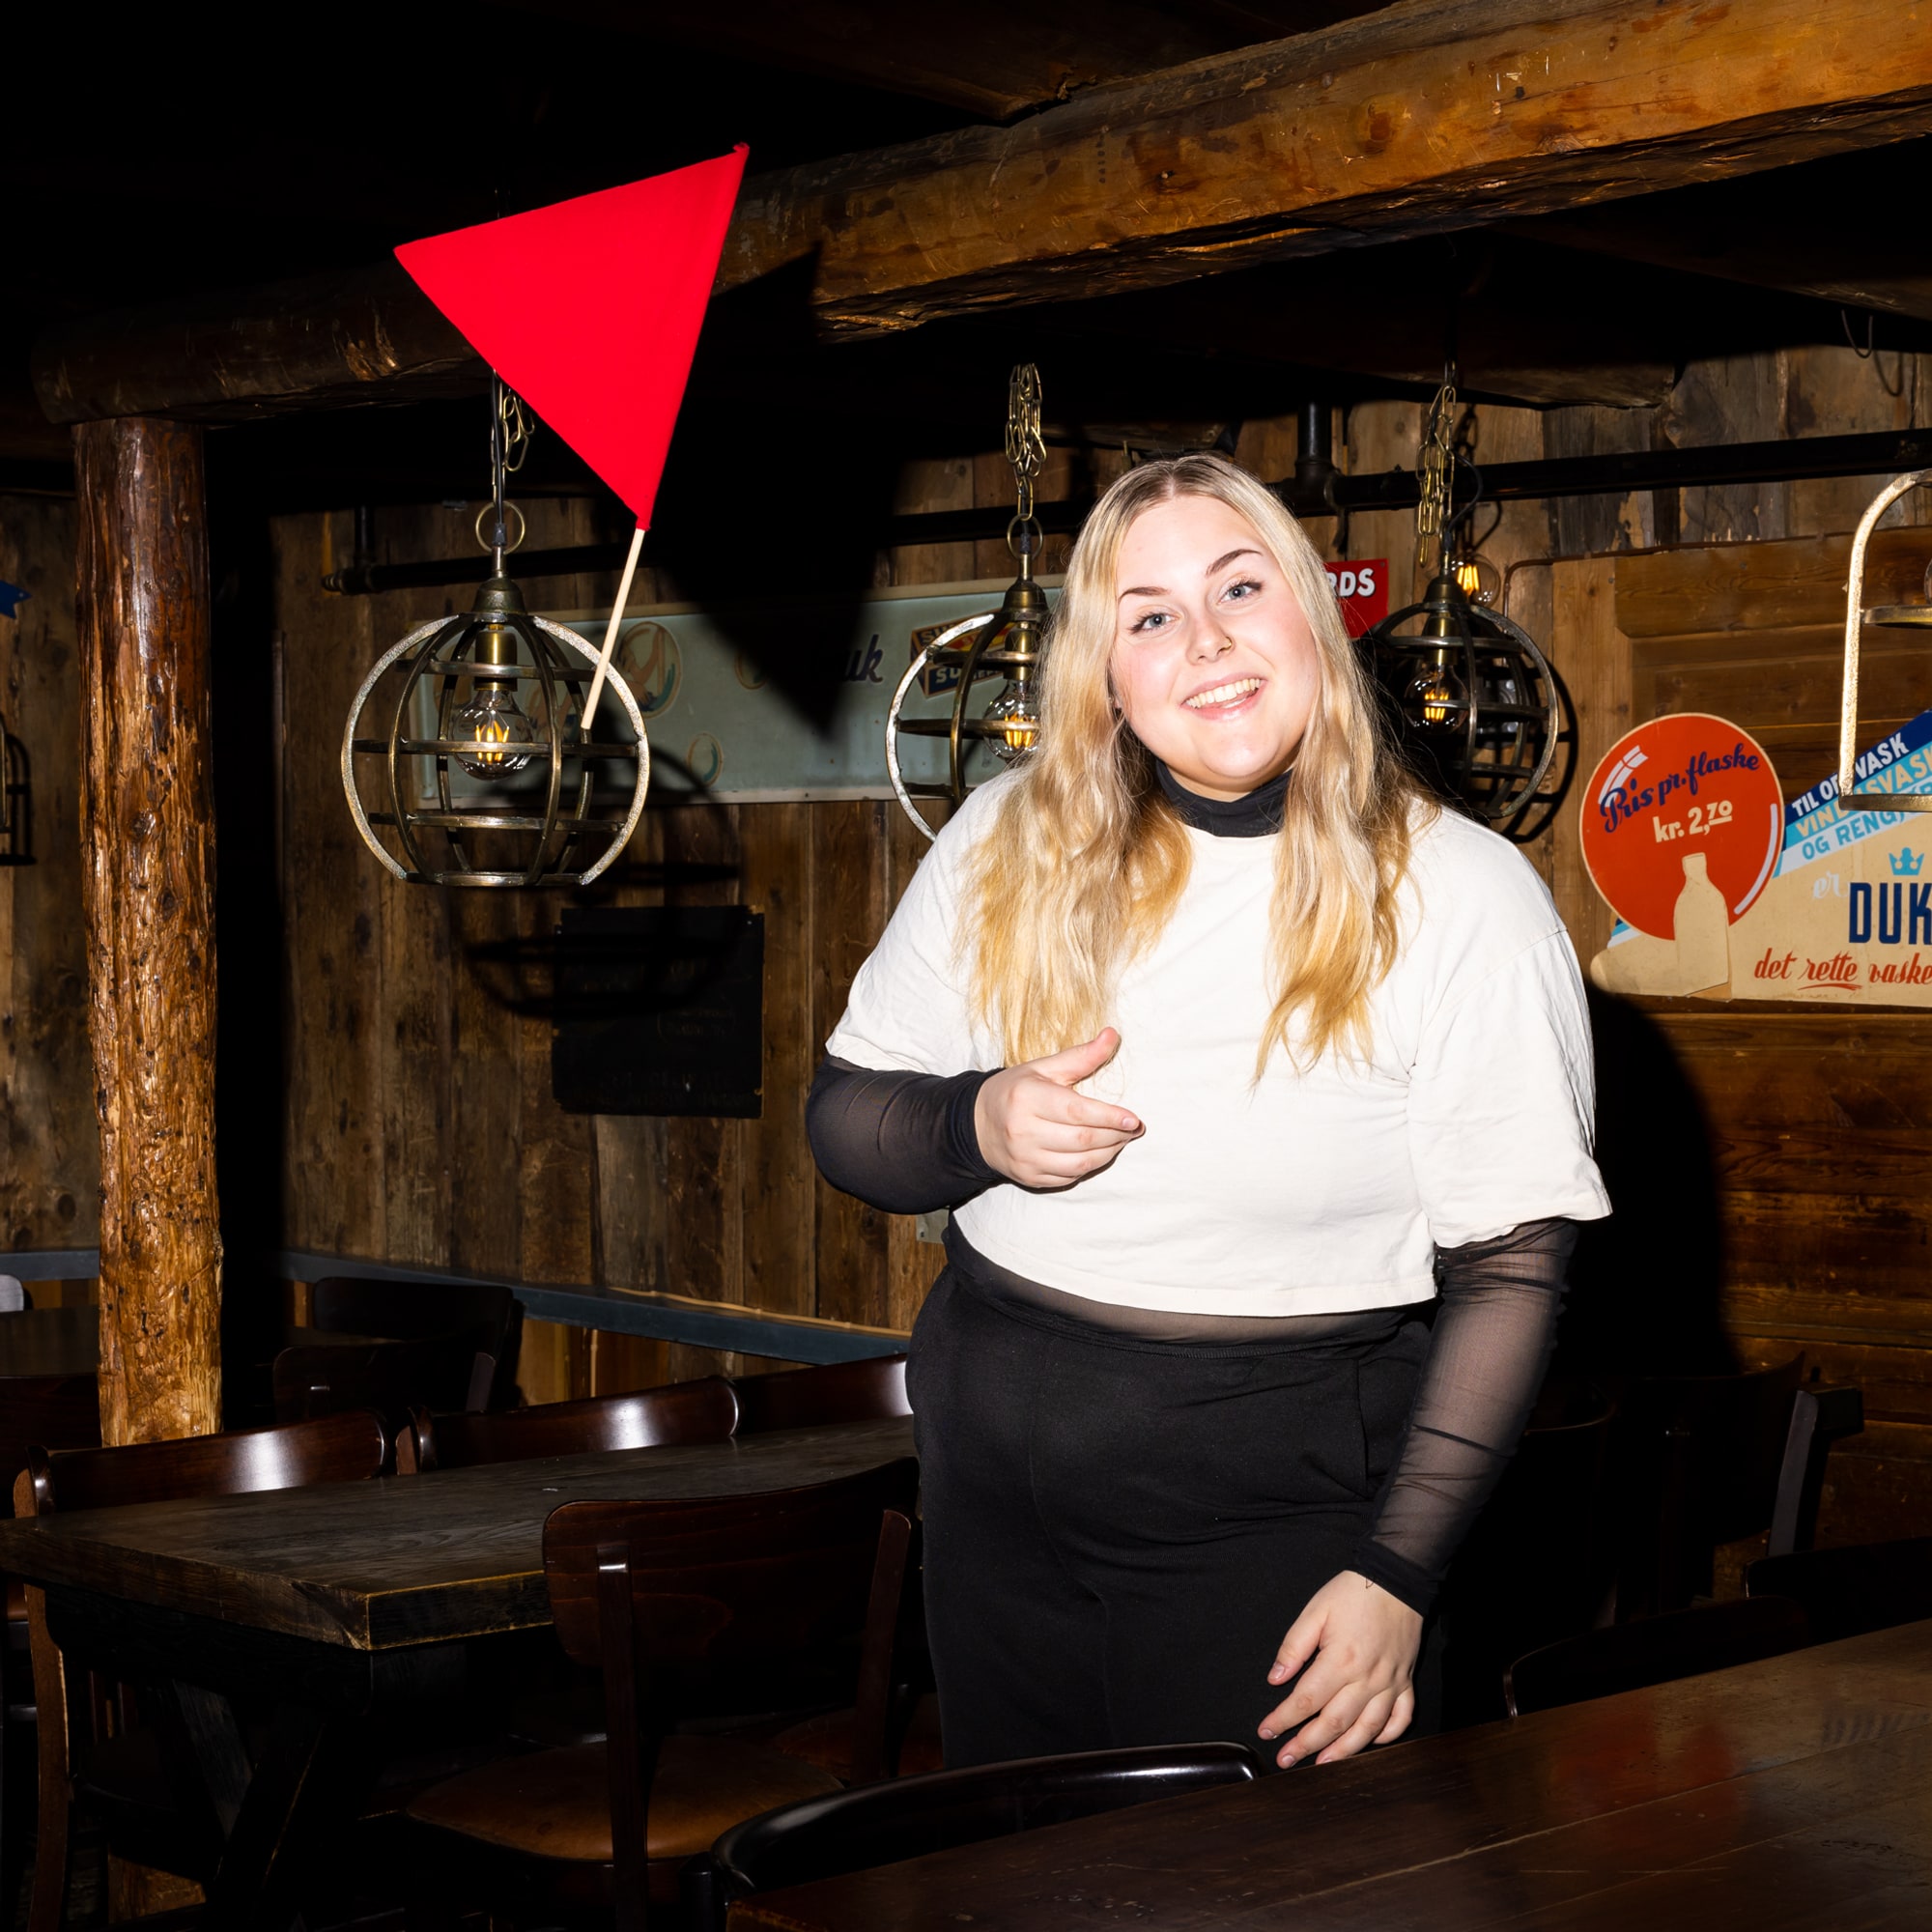 Cathrine er på en pub i Trondheim. Interiøret er av tre. Hun smiler stort mens hun kaster et rødt flagg i luften. 